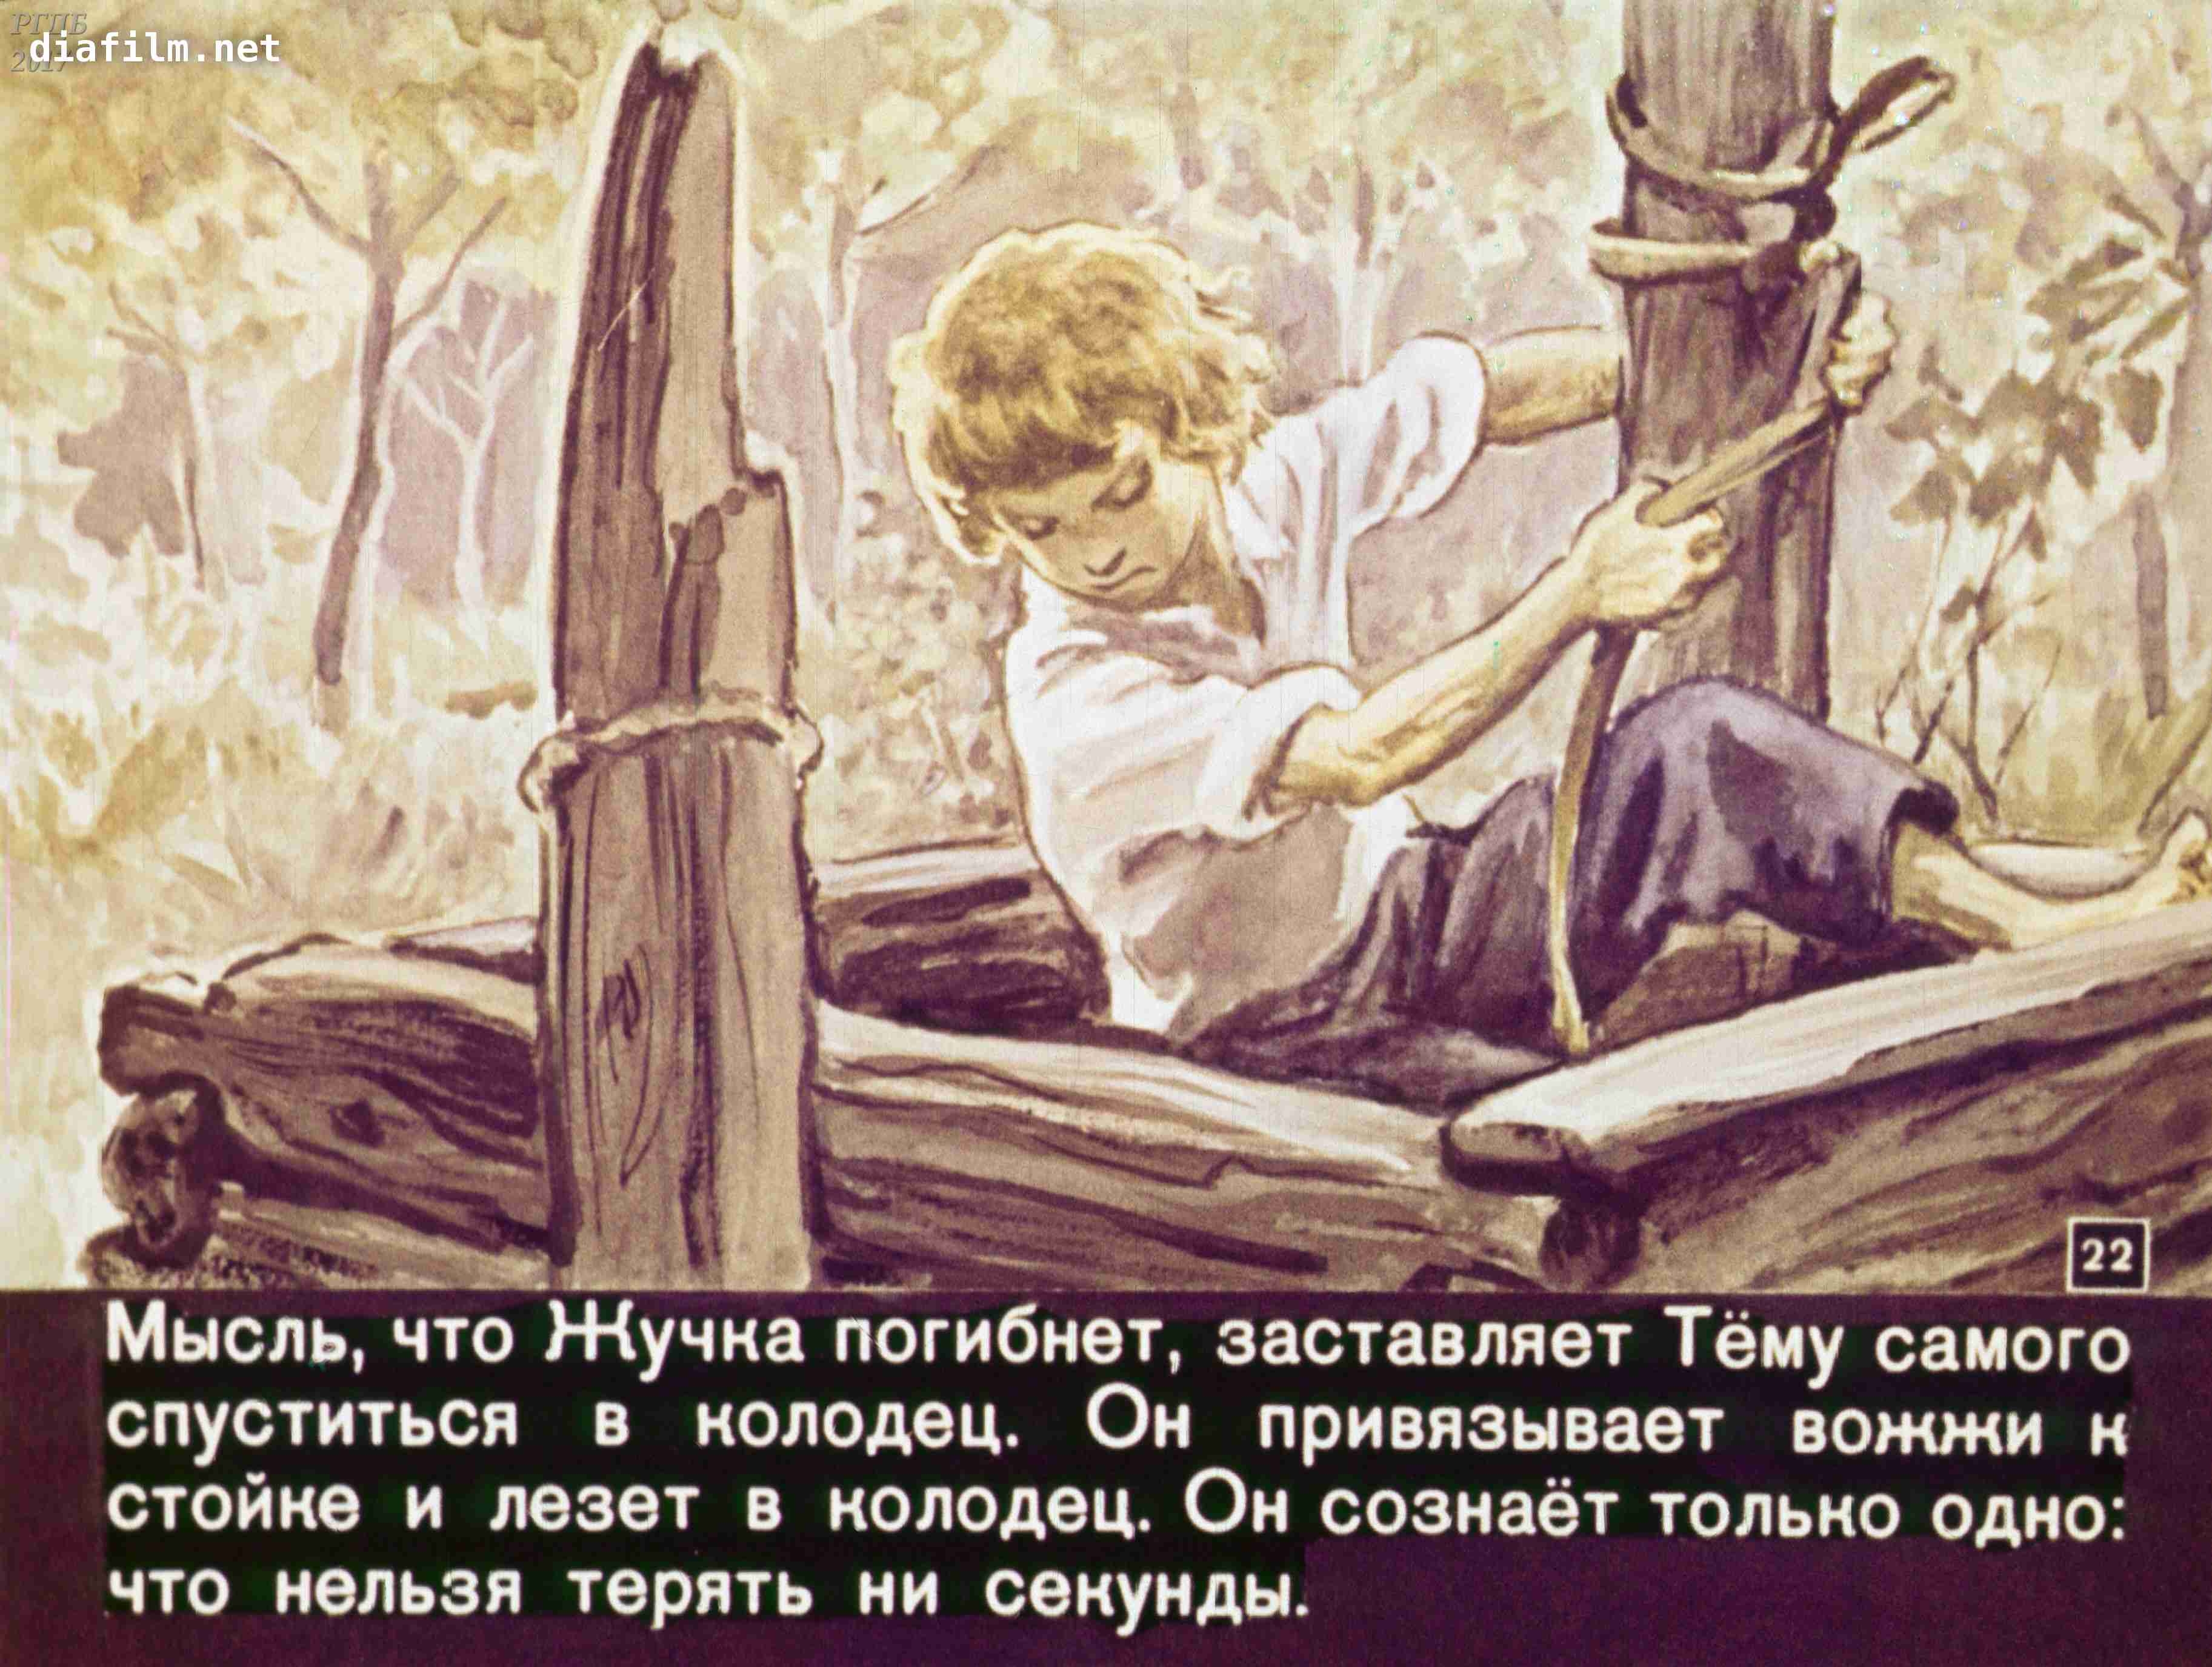 Гарина Михайловского произведение тема и жучка